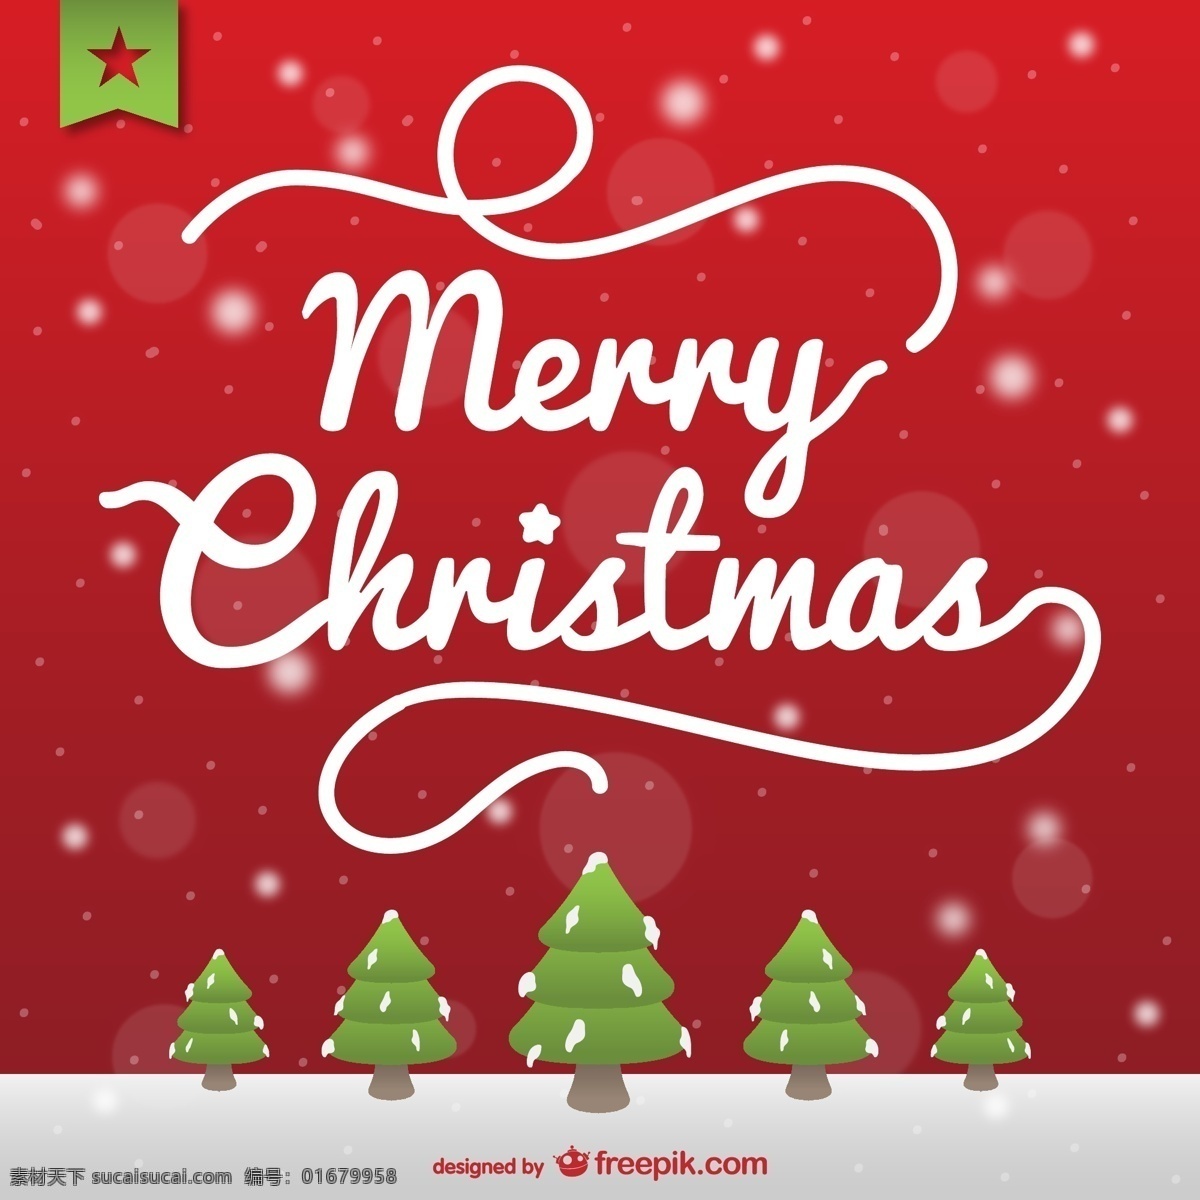 圣诞贺卡 白雪皑皑 圣诞树 圣诞 圣诞快乐 圣诞节 冬季 卡片 圣诞卡片